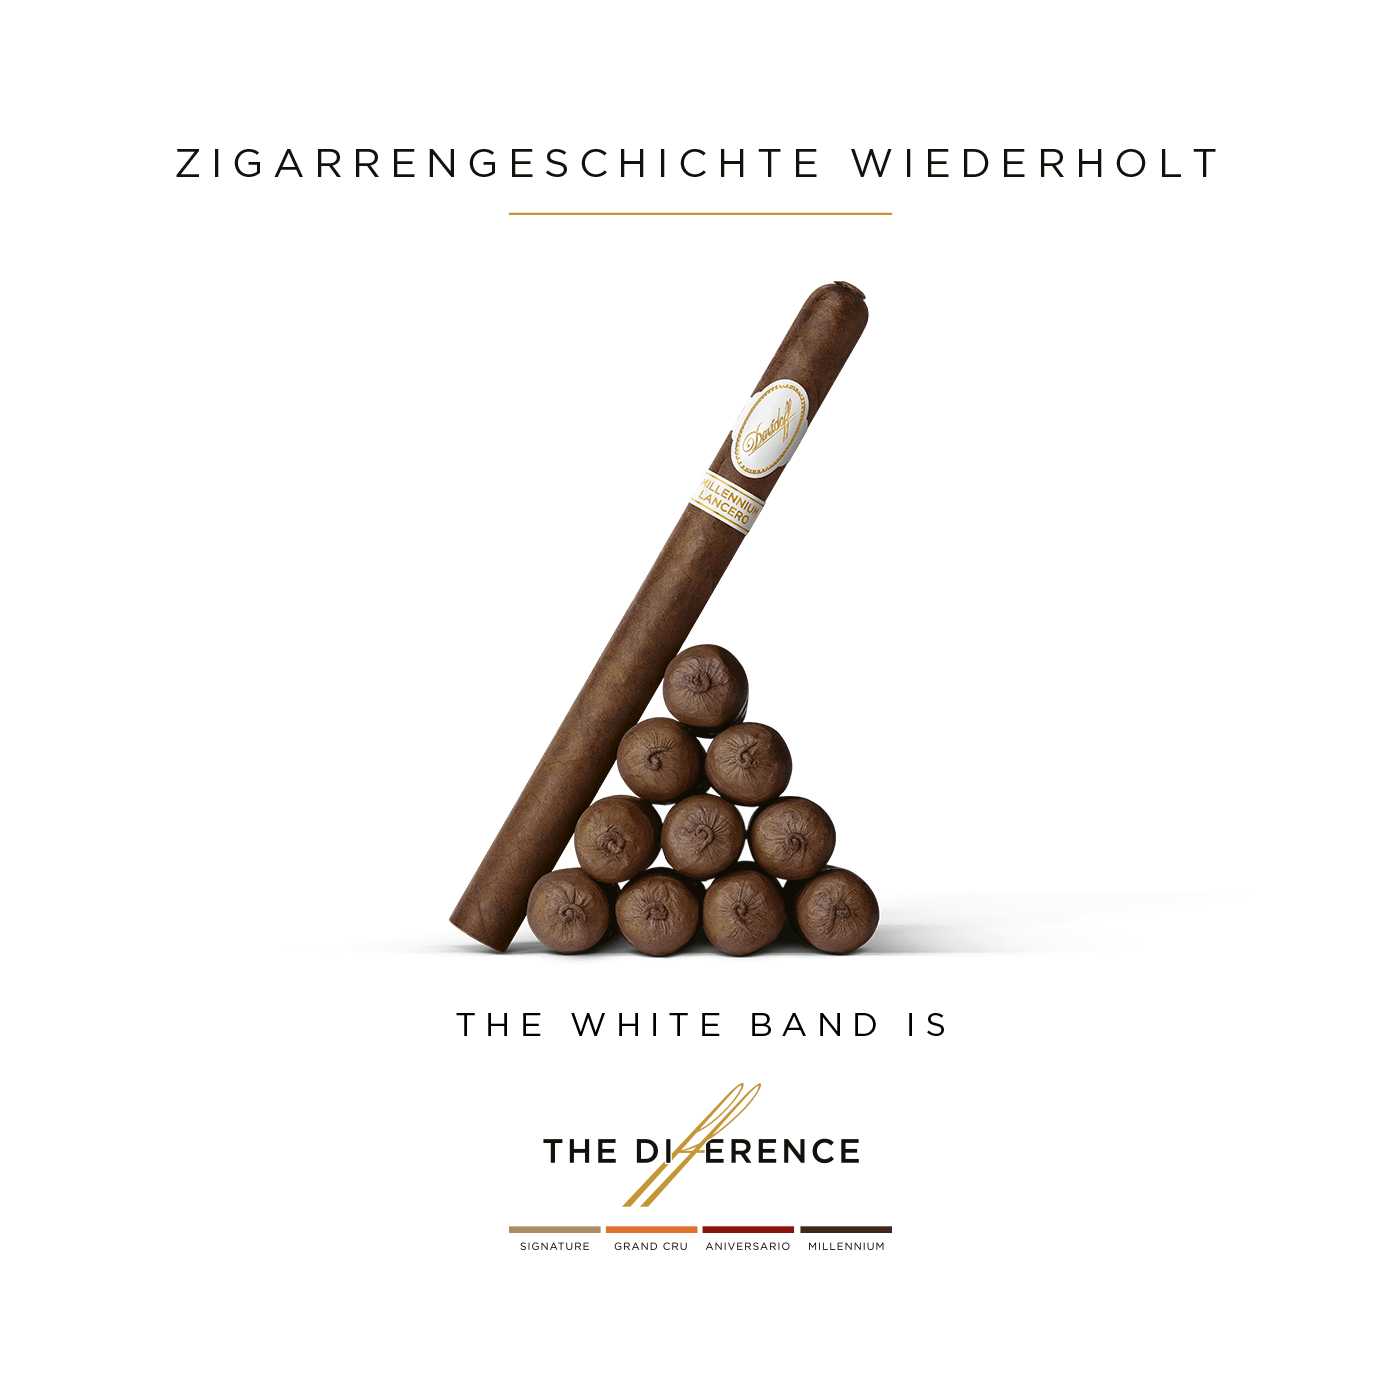 Zehn Davidoff Millennium Lancero Zigarren, die dreiecksförmig angeordnet sind und gegen die eine elfte Zigarre lehnt.